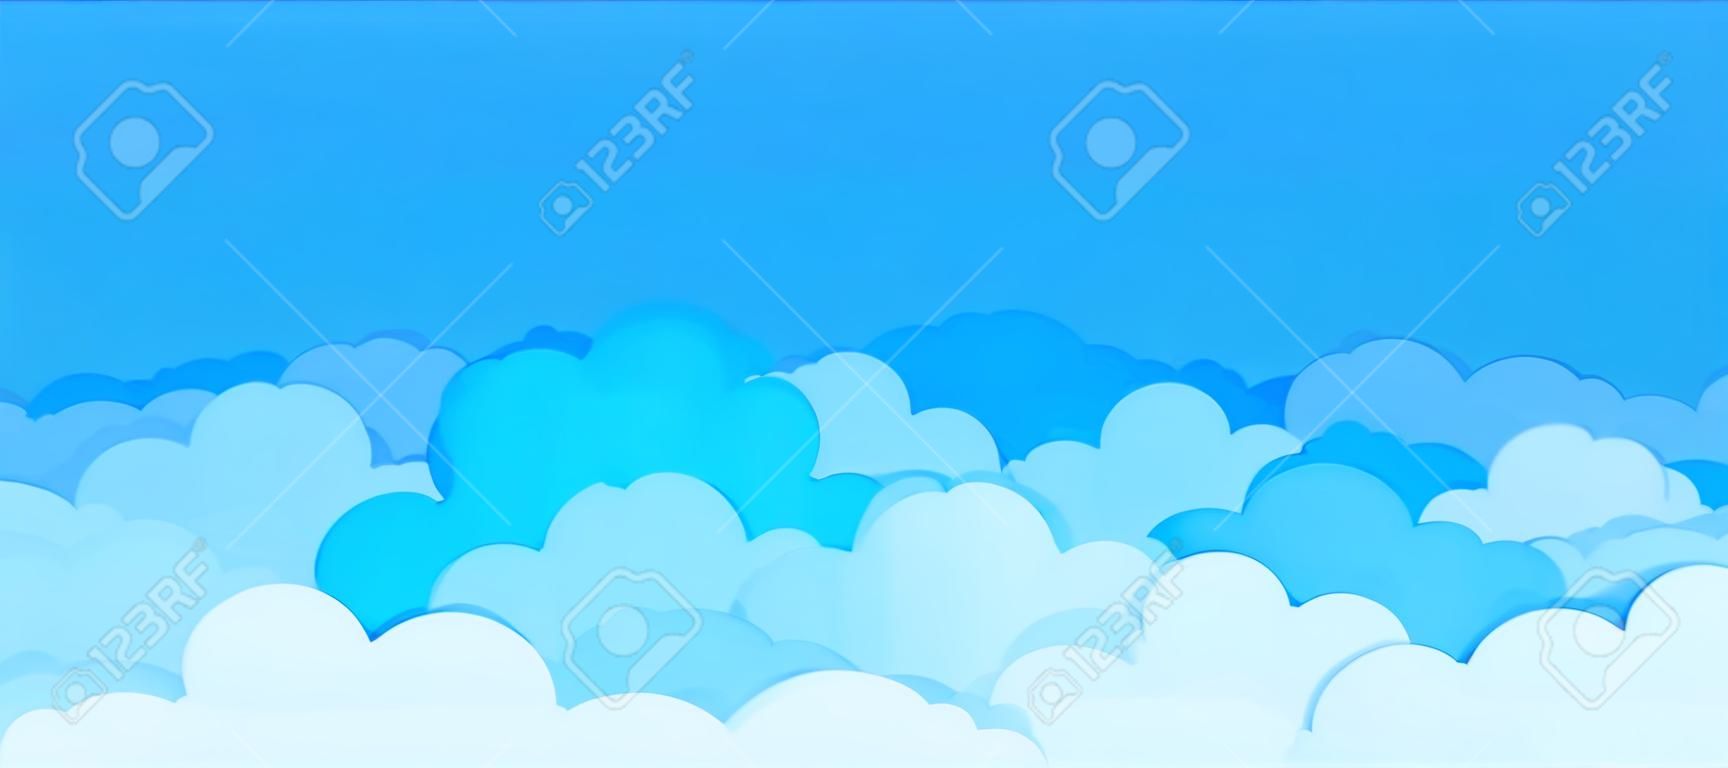 Płaskie tło chmura. kreskówka błękitne niebo wzór streszczenie pochmurno ramki pochmurno lato plakat scena. wektor chmury graficzne tapety